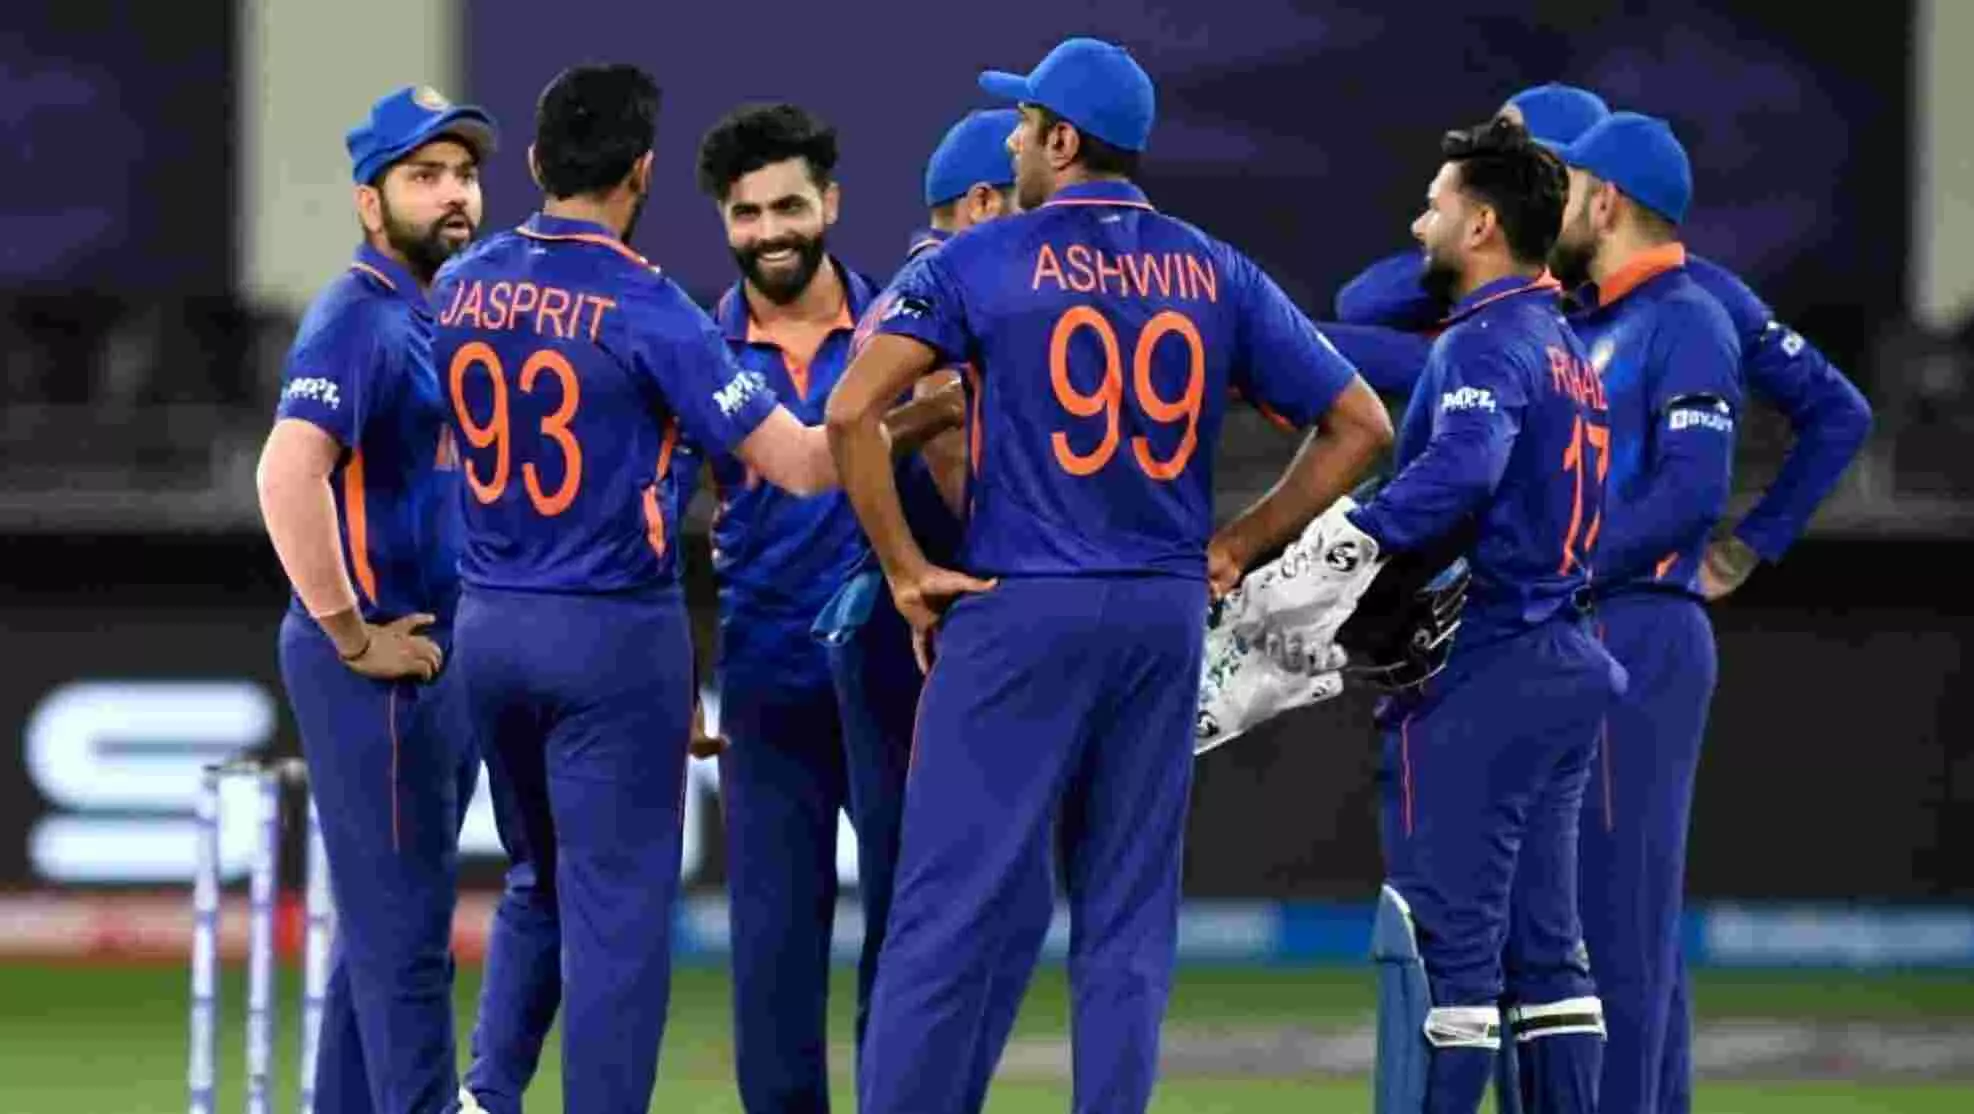 टीम इंडिया को बड़ा झटका, रवींद्र जडेजा एशिया कप से बाहर, घुटने की चोट के चलते टूर्नामेंट से हटे, अक्षर पटेल को मौका